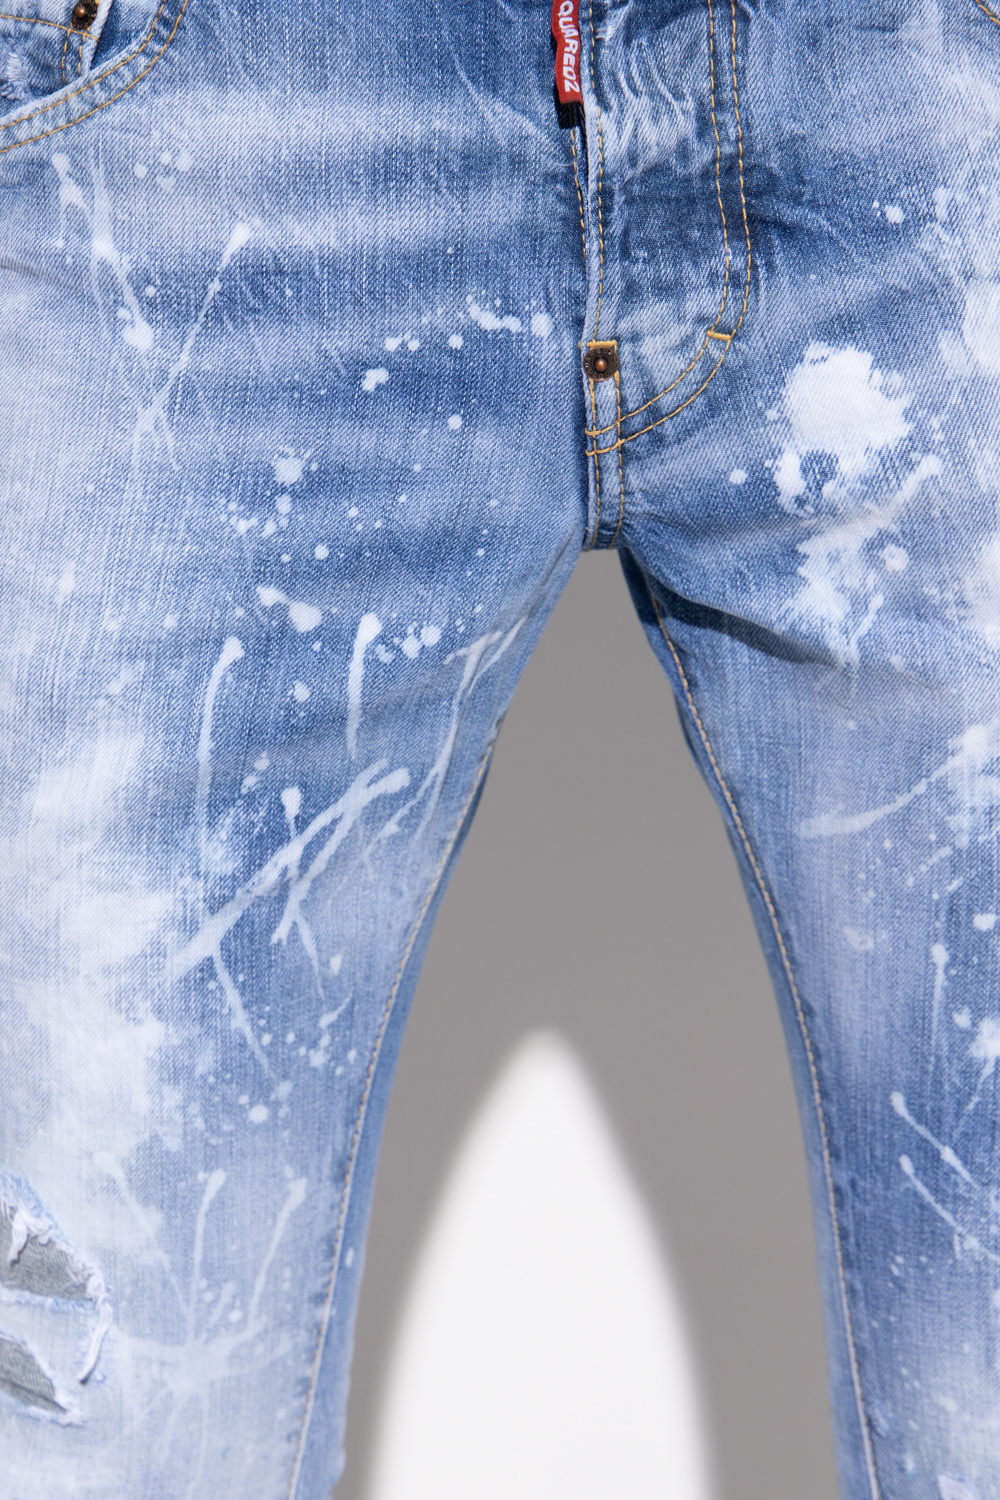 Dsquared2 'Skater' jeans | Men's Clothing | Vitkac